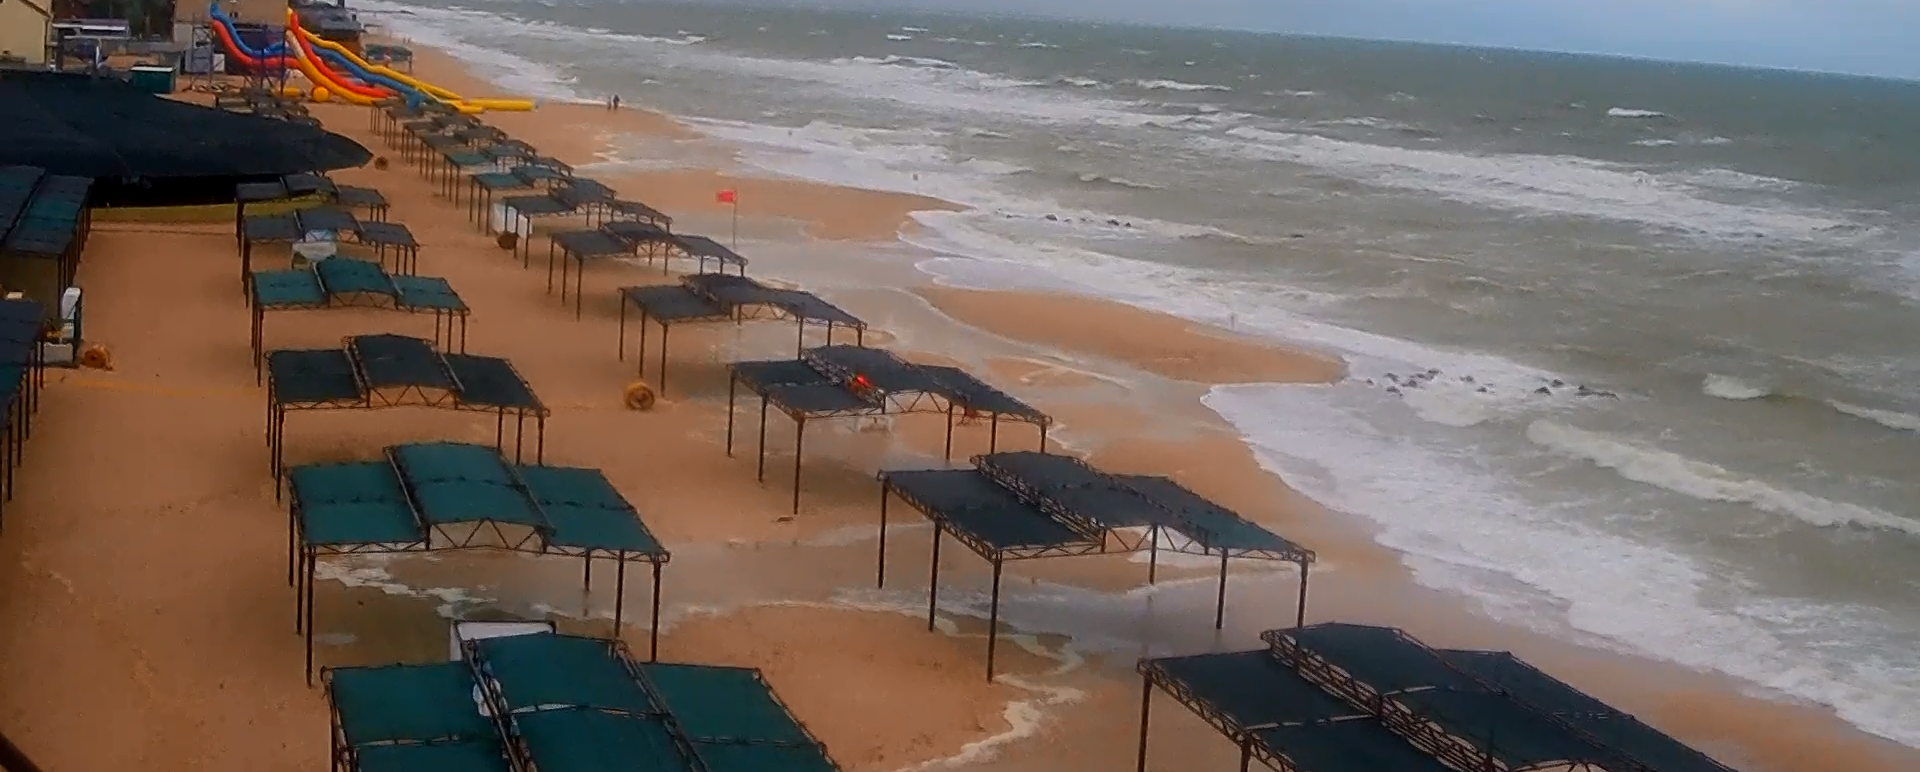 В Кирилловке затопило пляжи из-за шторма на море